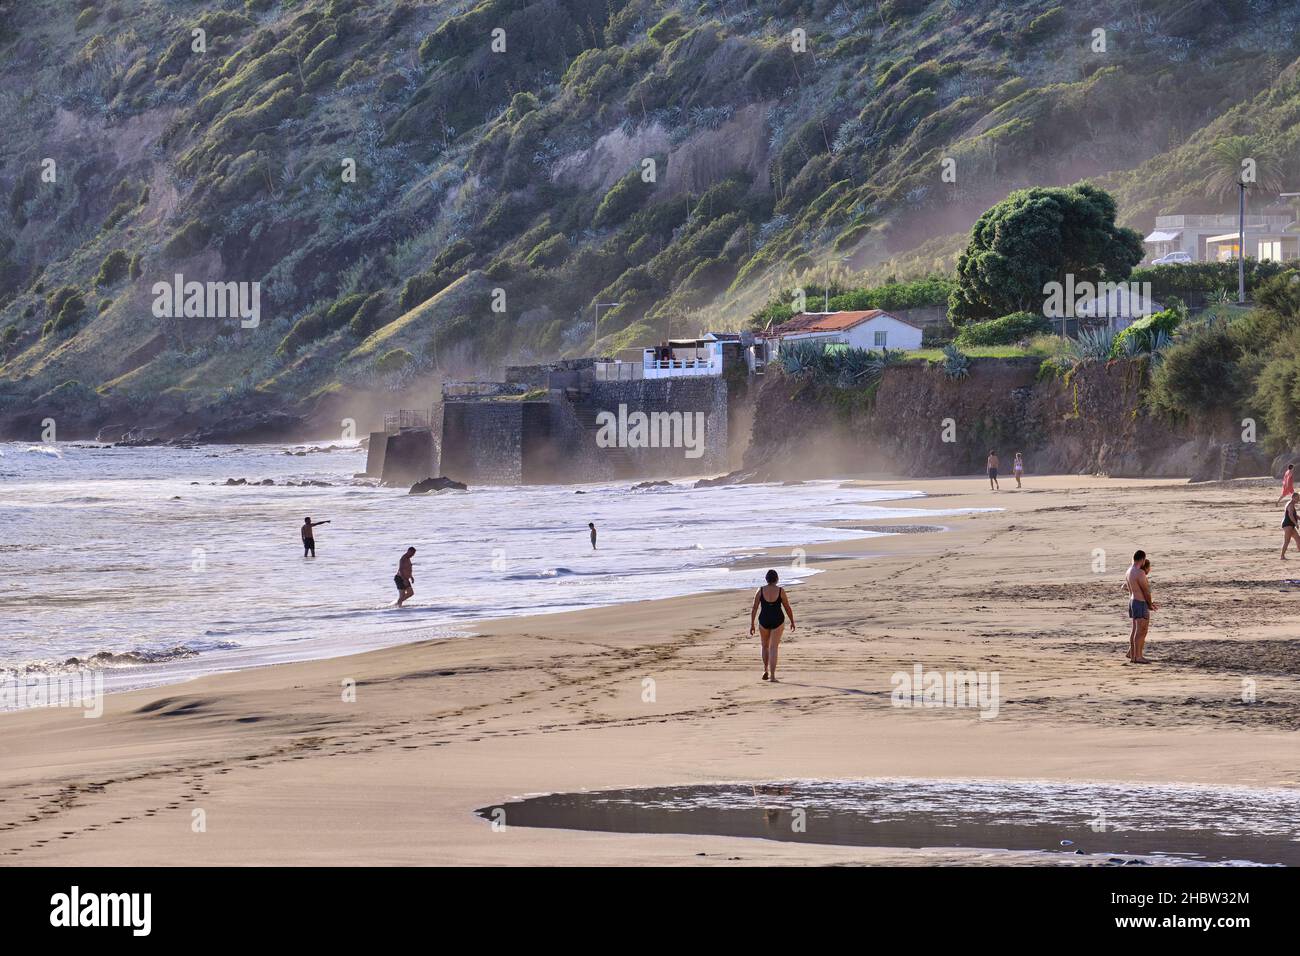 Praia Formosa, einer der besten Sandstrände der Azoren. Santa Maria, Portugal Stockfoto